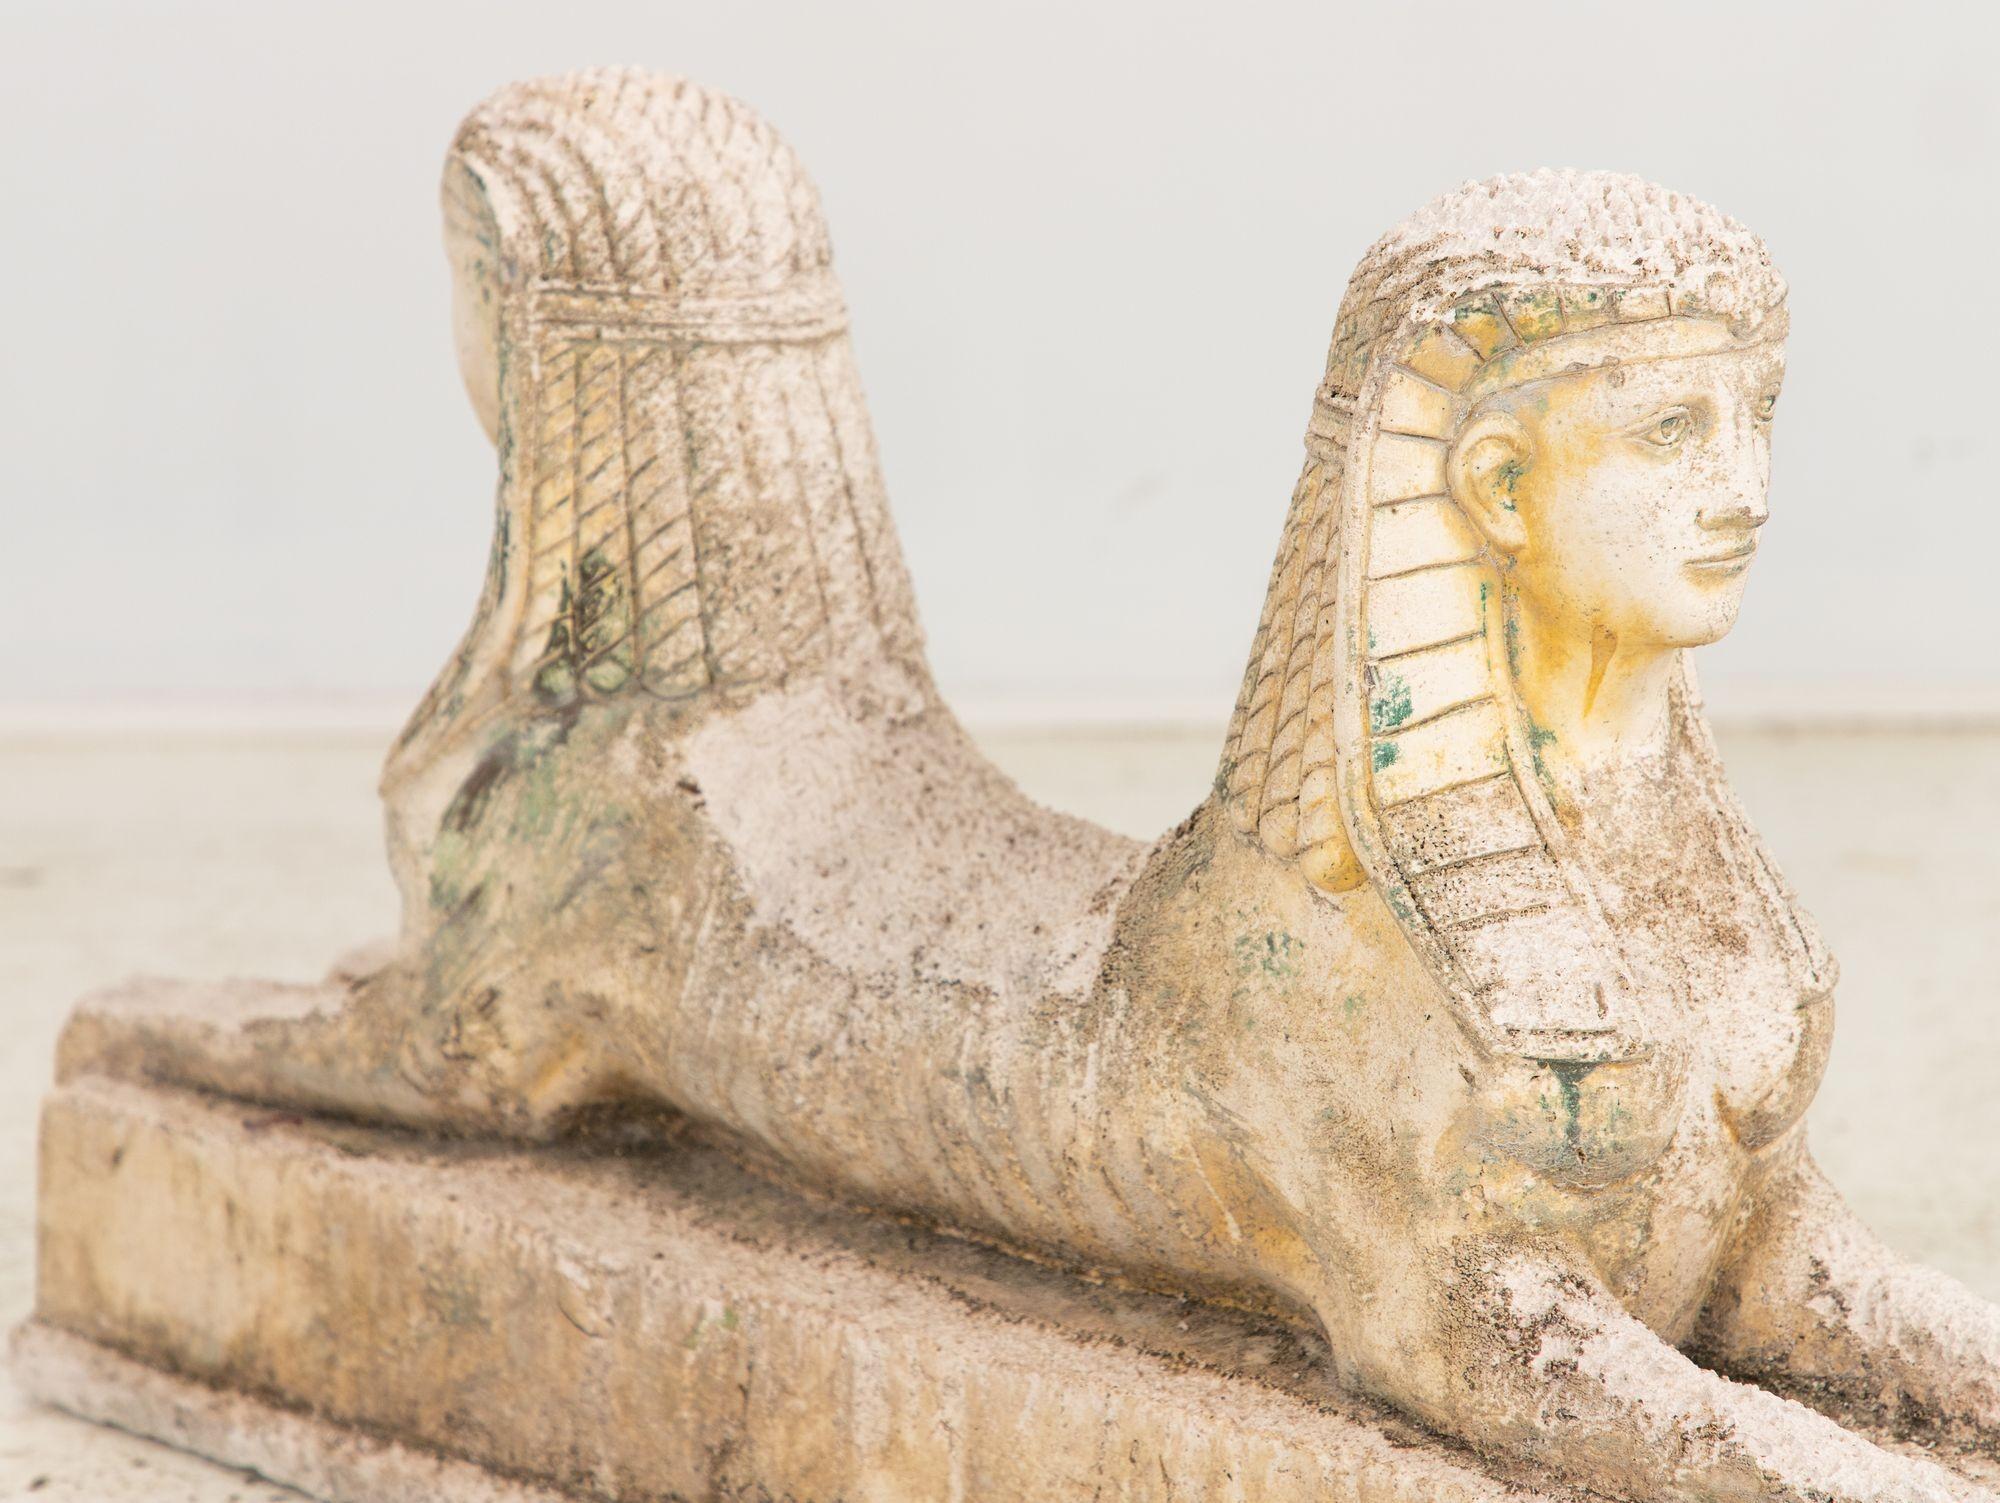 Diese doppelseitige, griechisch inspirierte Sphinx, die Mitte des 20. Jahrhunderts in England im georgianischen Stil hergestellt wurde, ist eine bemerkenswerte Darstellung des Reizes der Grand Tour. Die detailgetreu gegossene Figur zeigt mit ihren